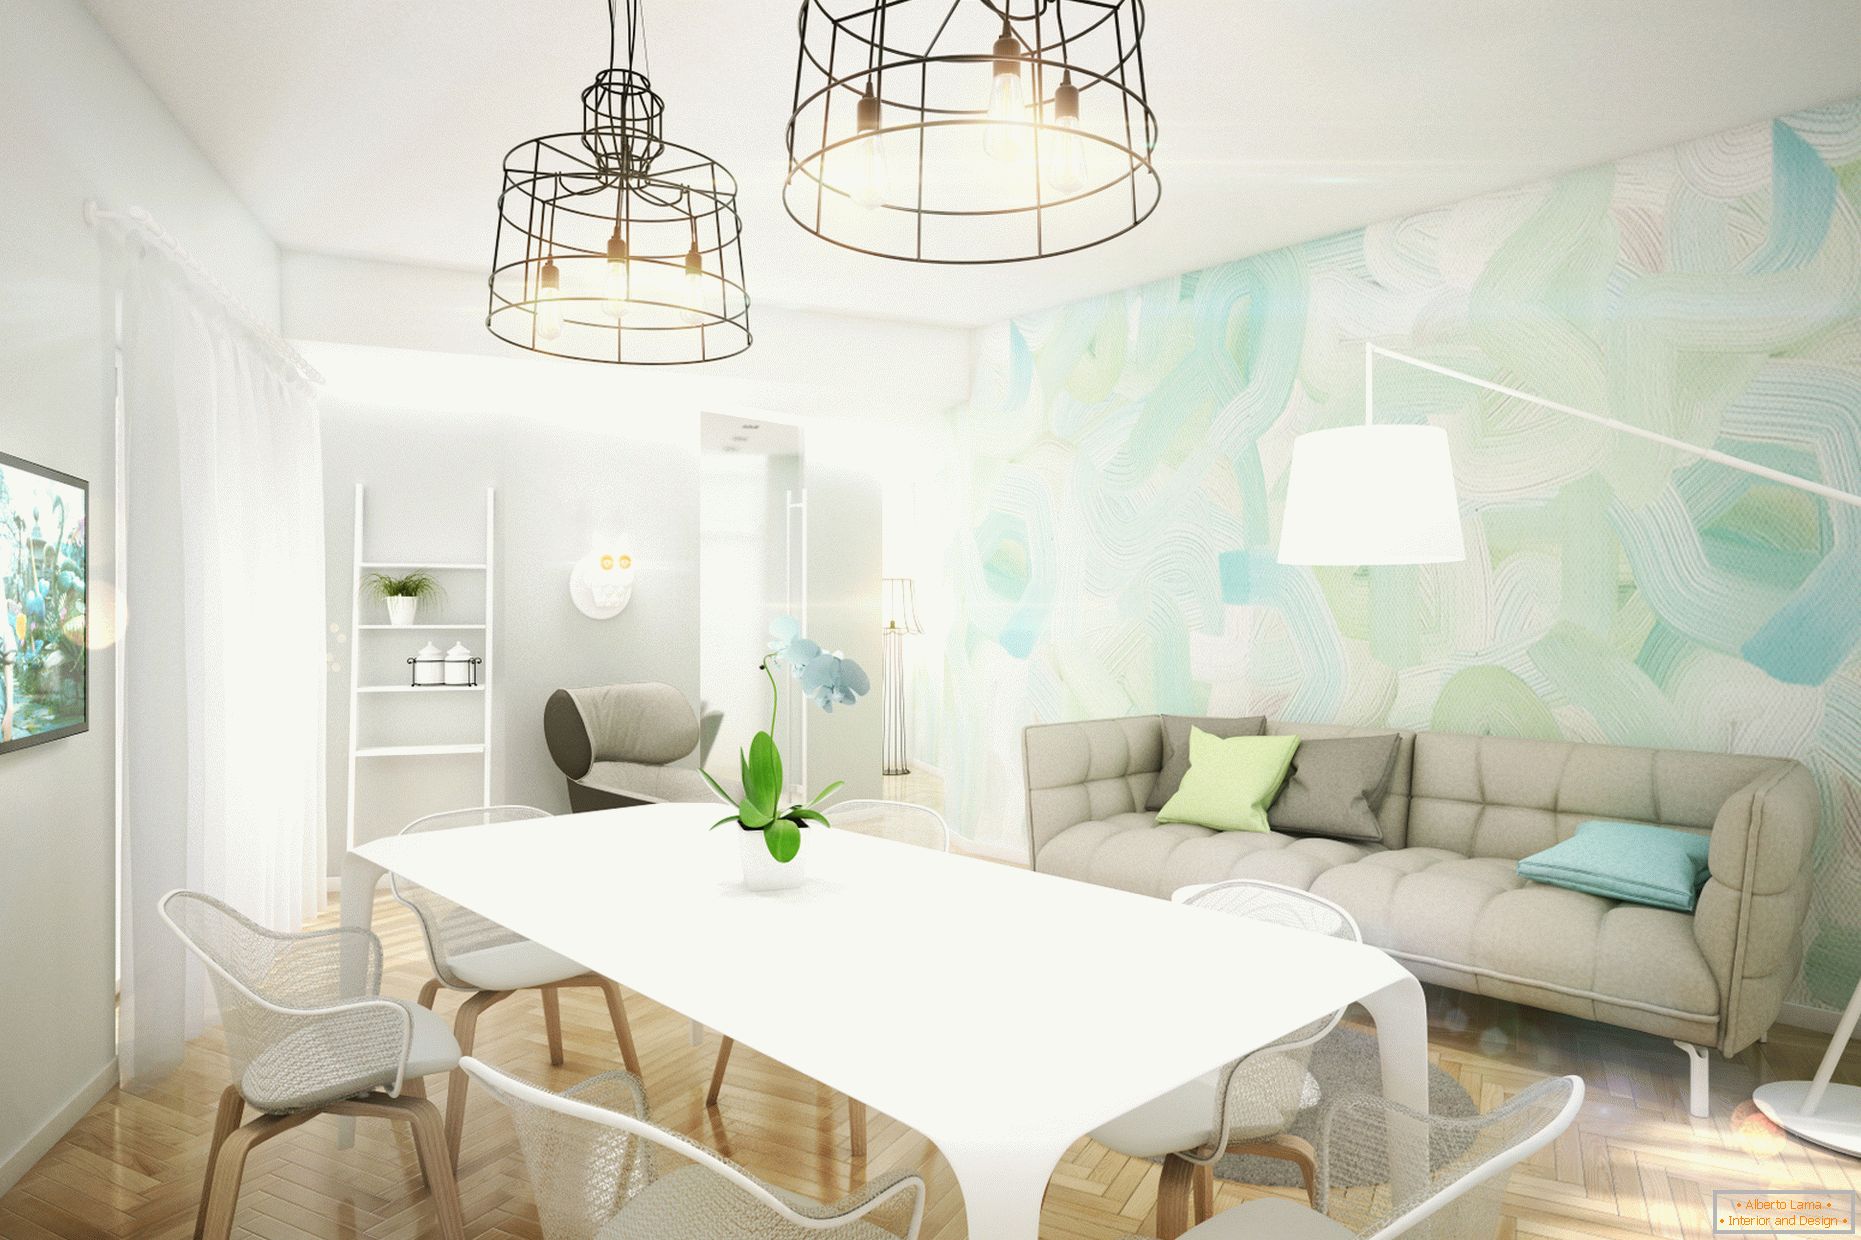 Designový byt v pastelových barvách: obývací pokoj